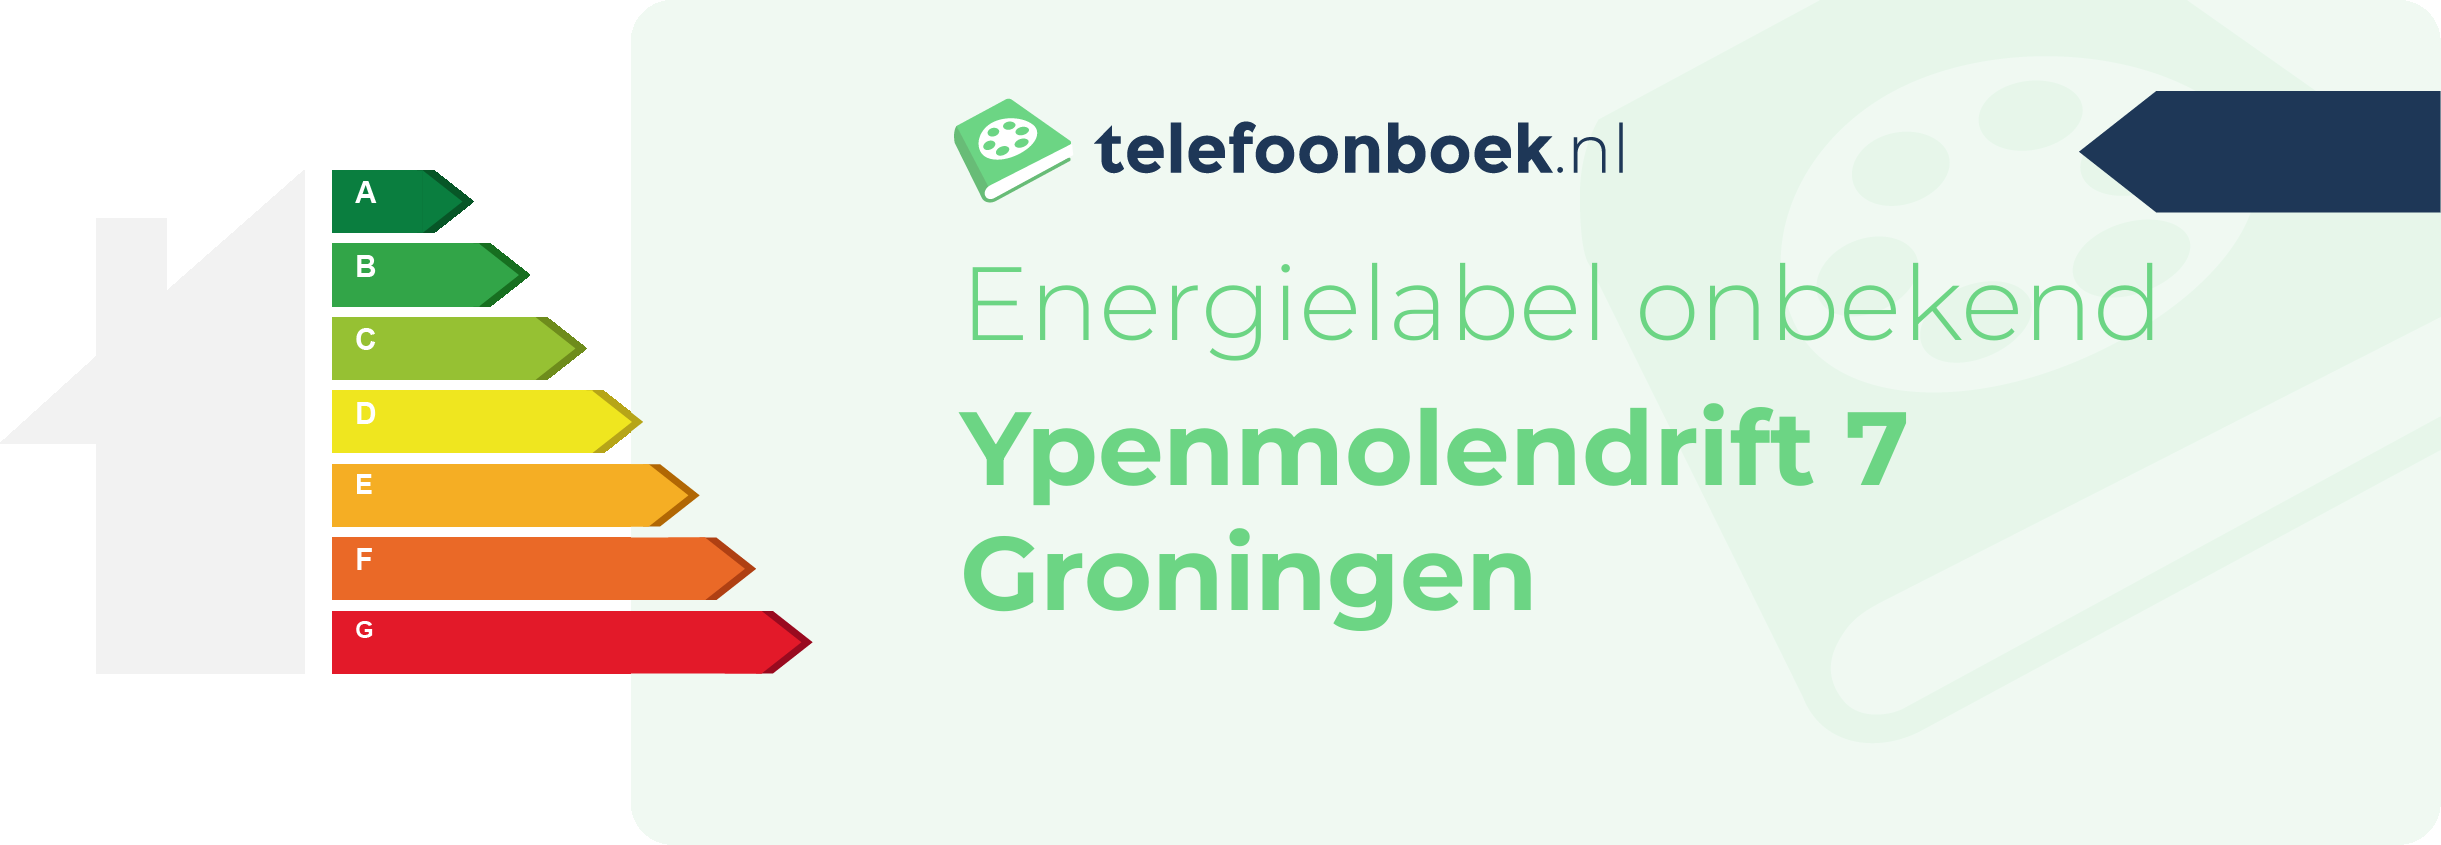 Energielabel Ypenmolendrift 7 Groningen